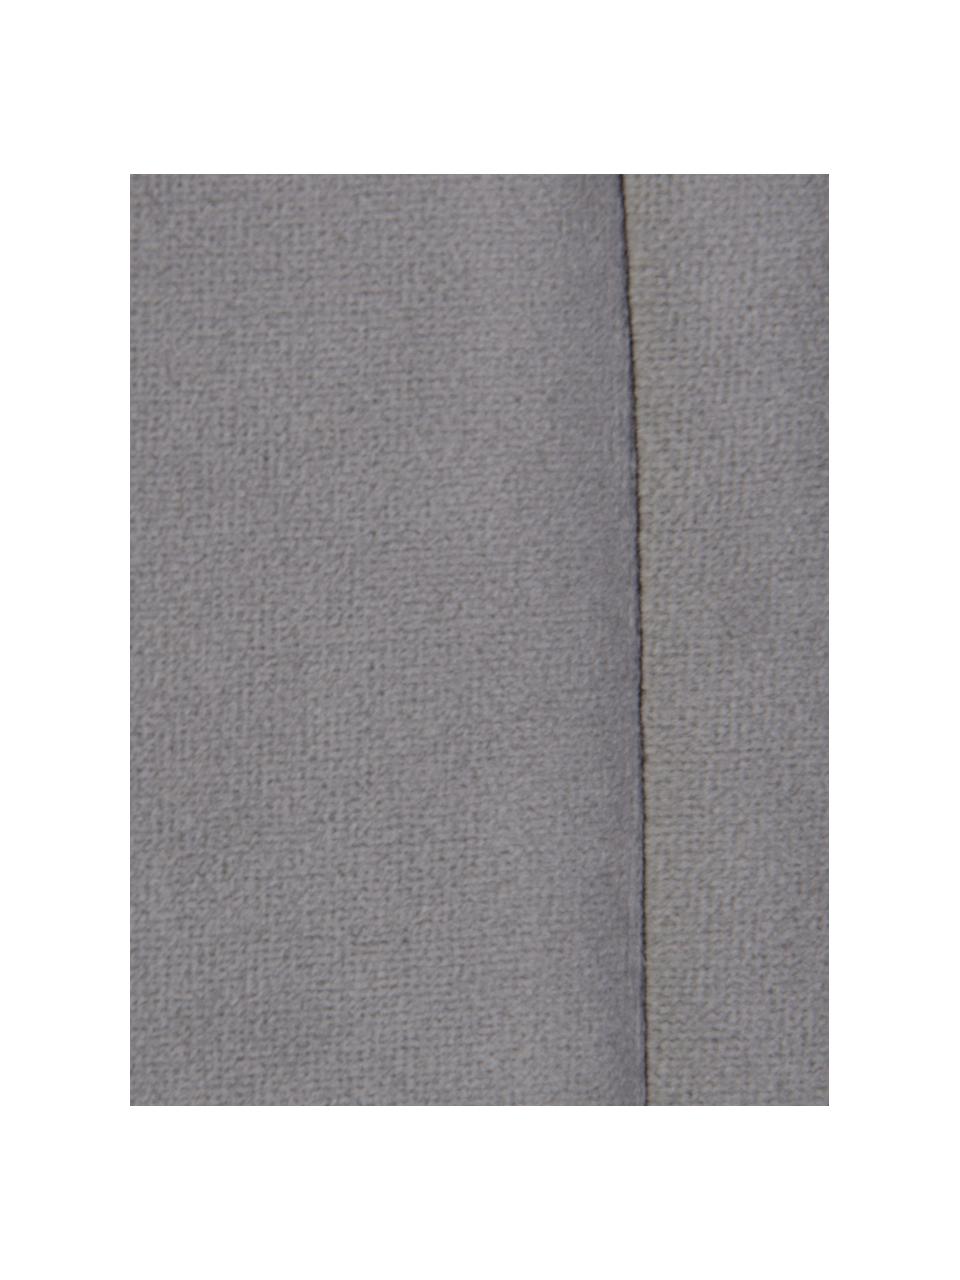 Gestoffeerd fluwelen hoofdeinde Adrio in grijs, Bekleding: 100% polyester fluweel, Frame: hout, metaal, Fluweel grijs, B 160 cm x H 64 cm